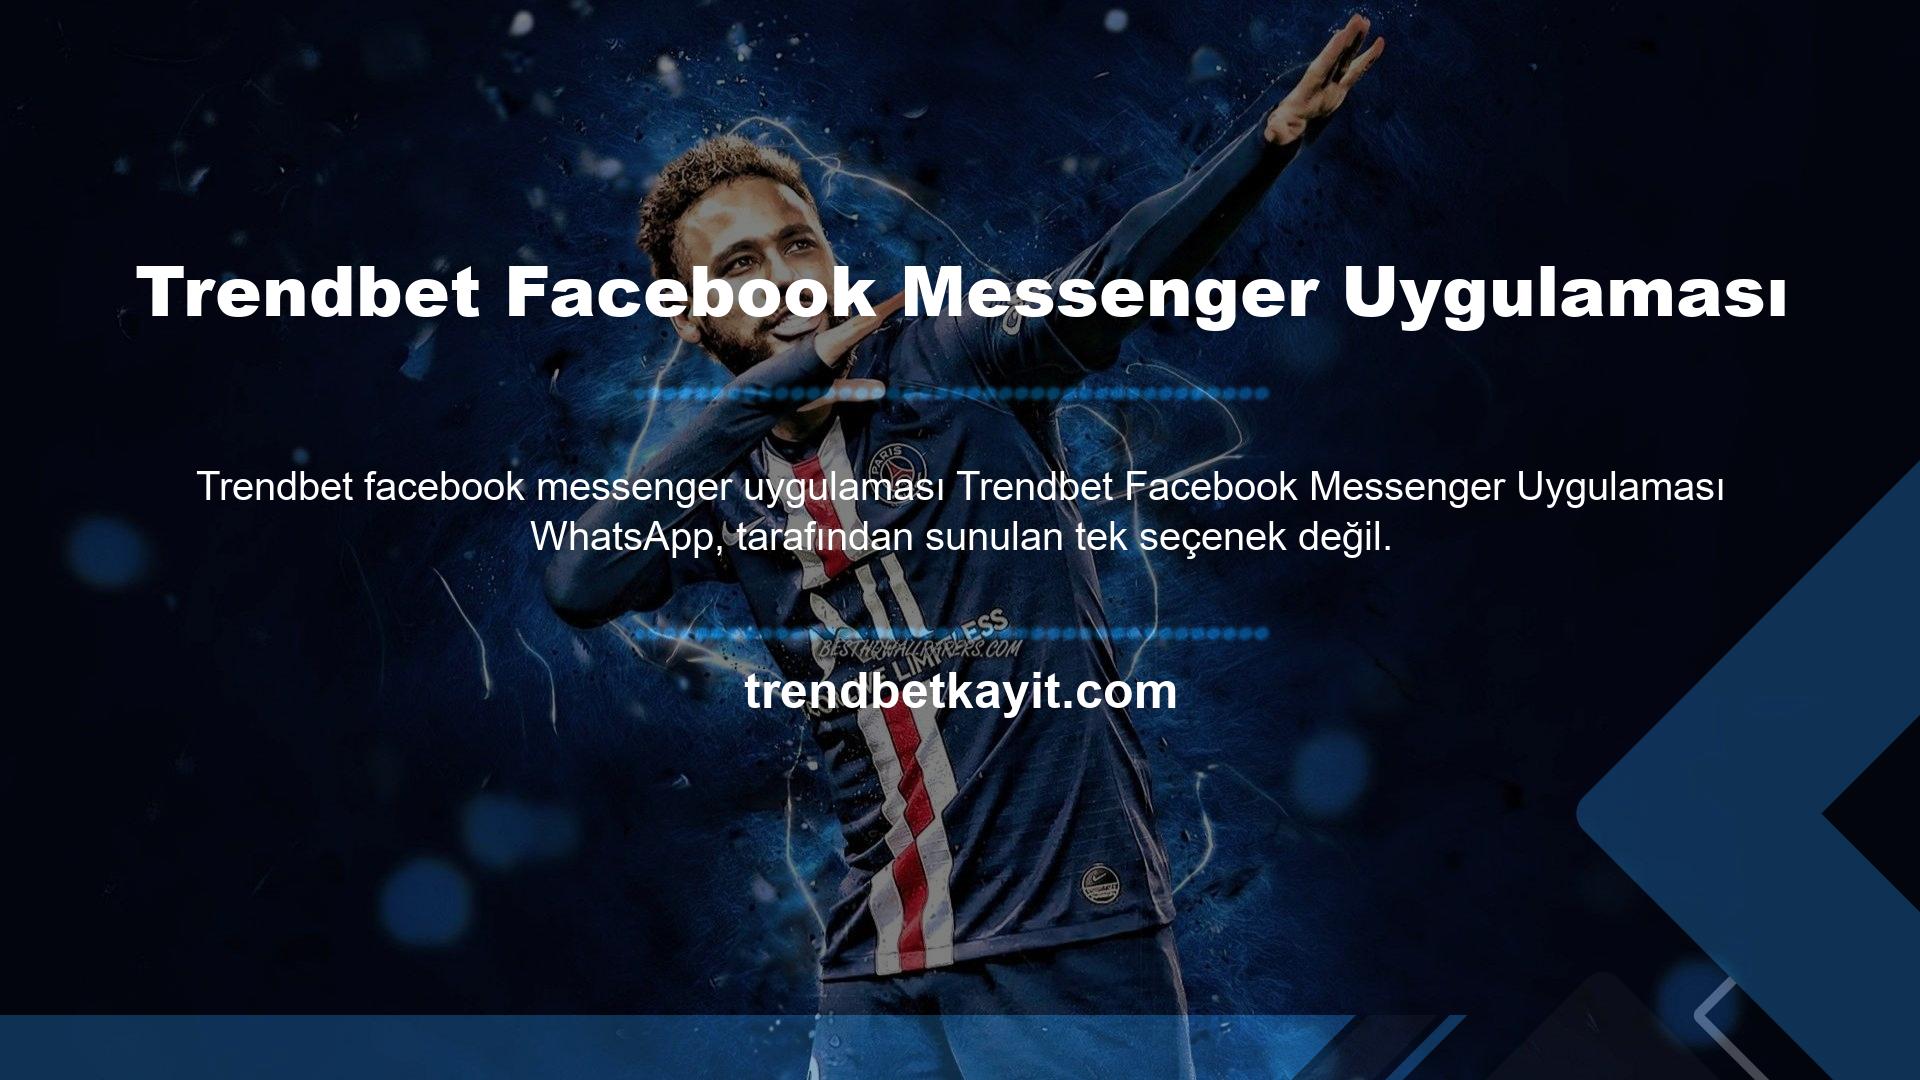 Trendbet Facebook Messenger uygulaması da iyi bilinmektedir